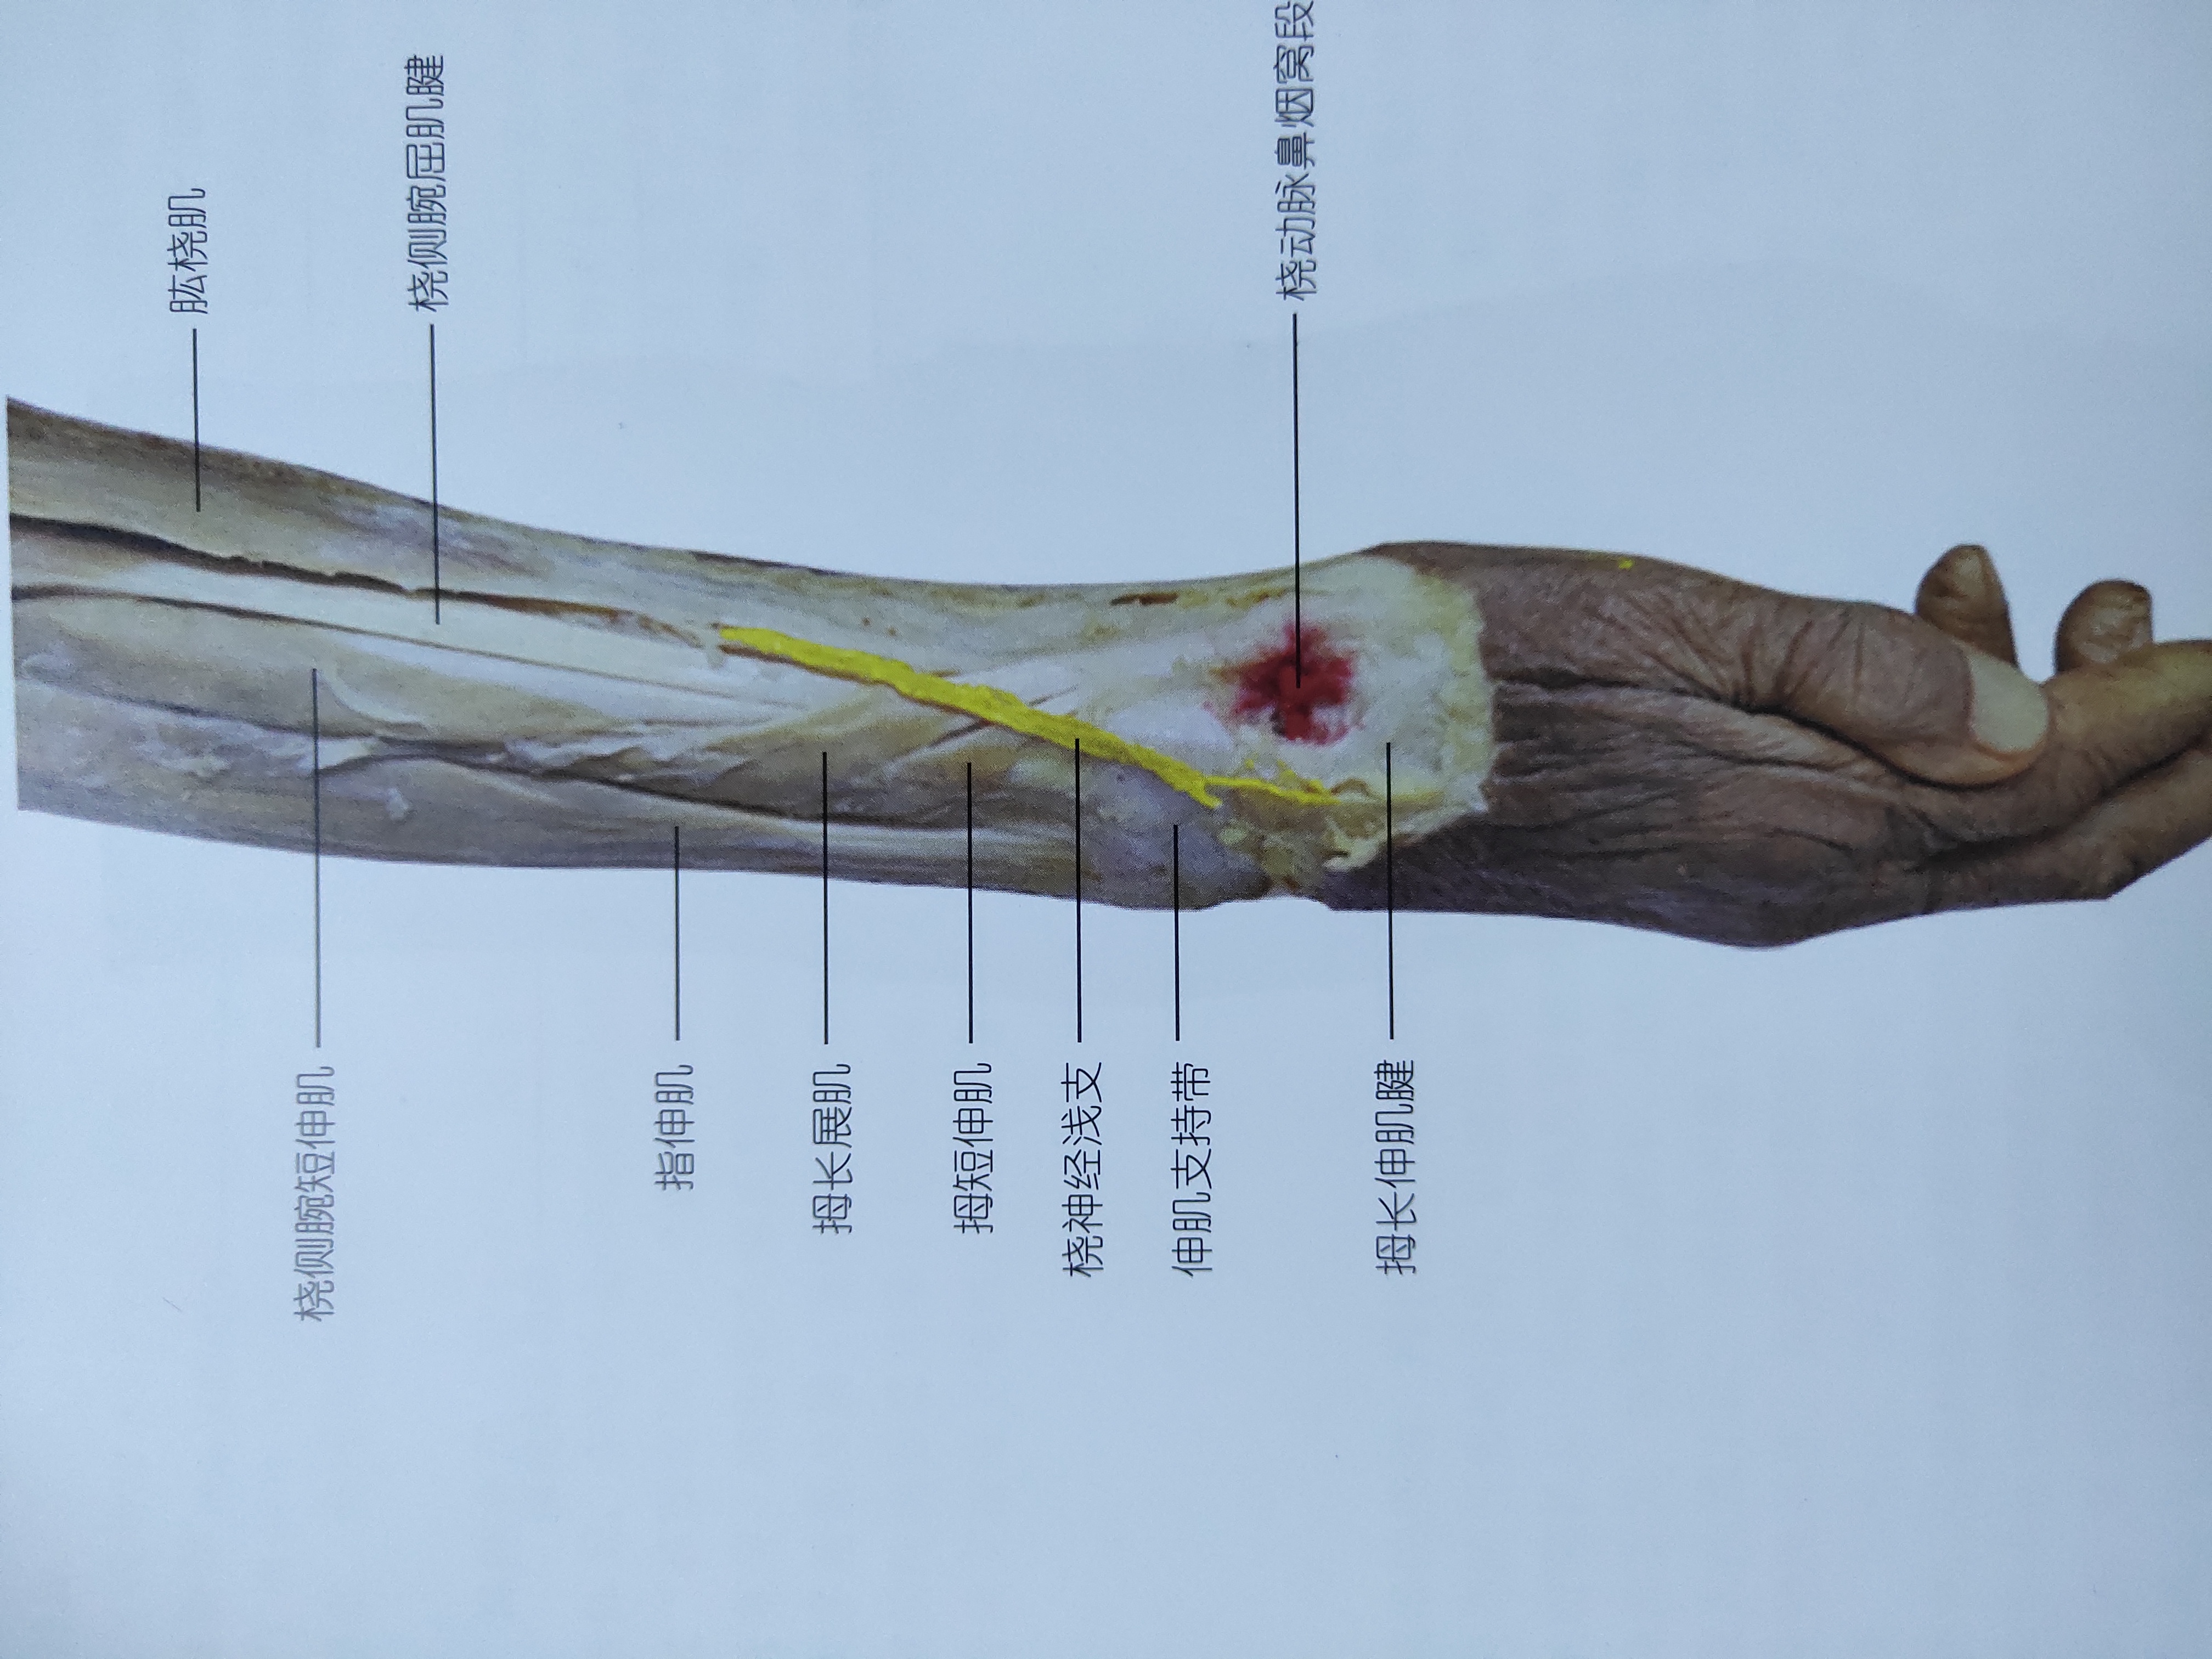 尺骨桡骨解剖图茎突图片